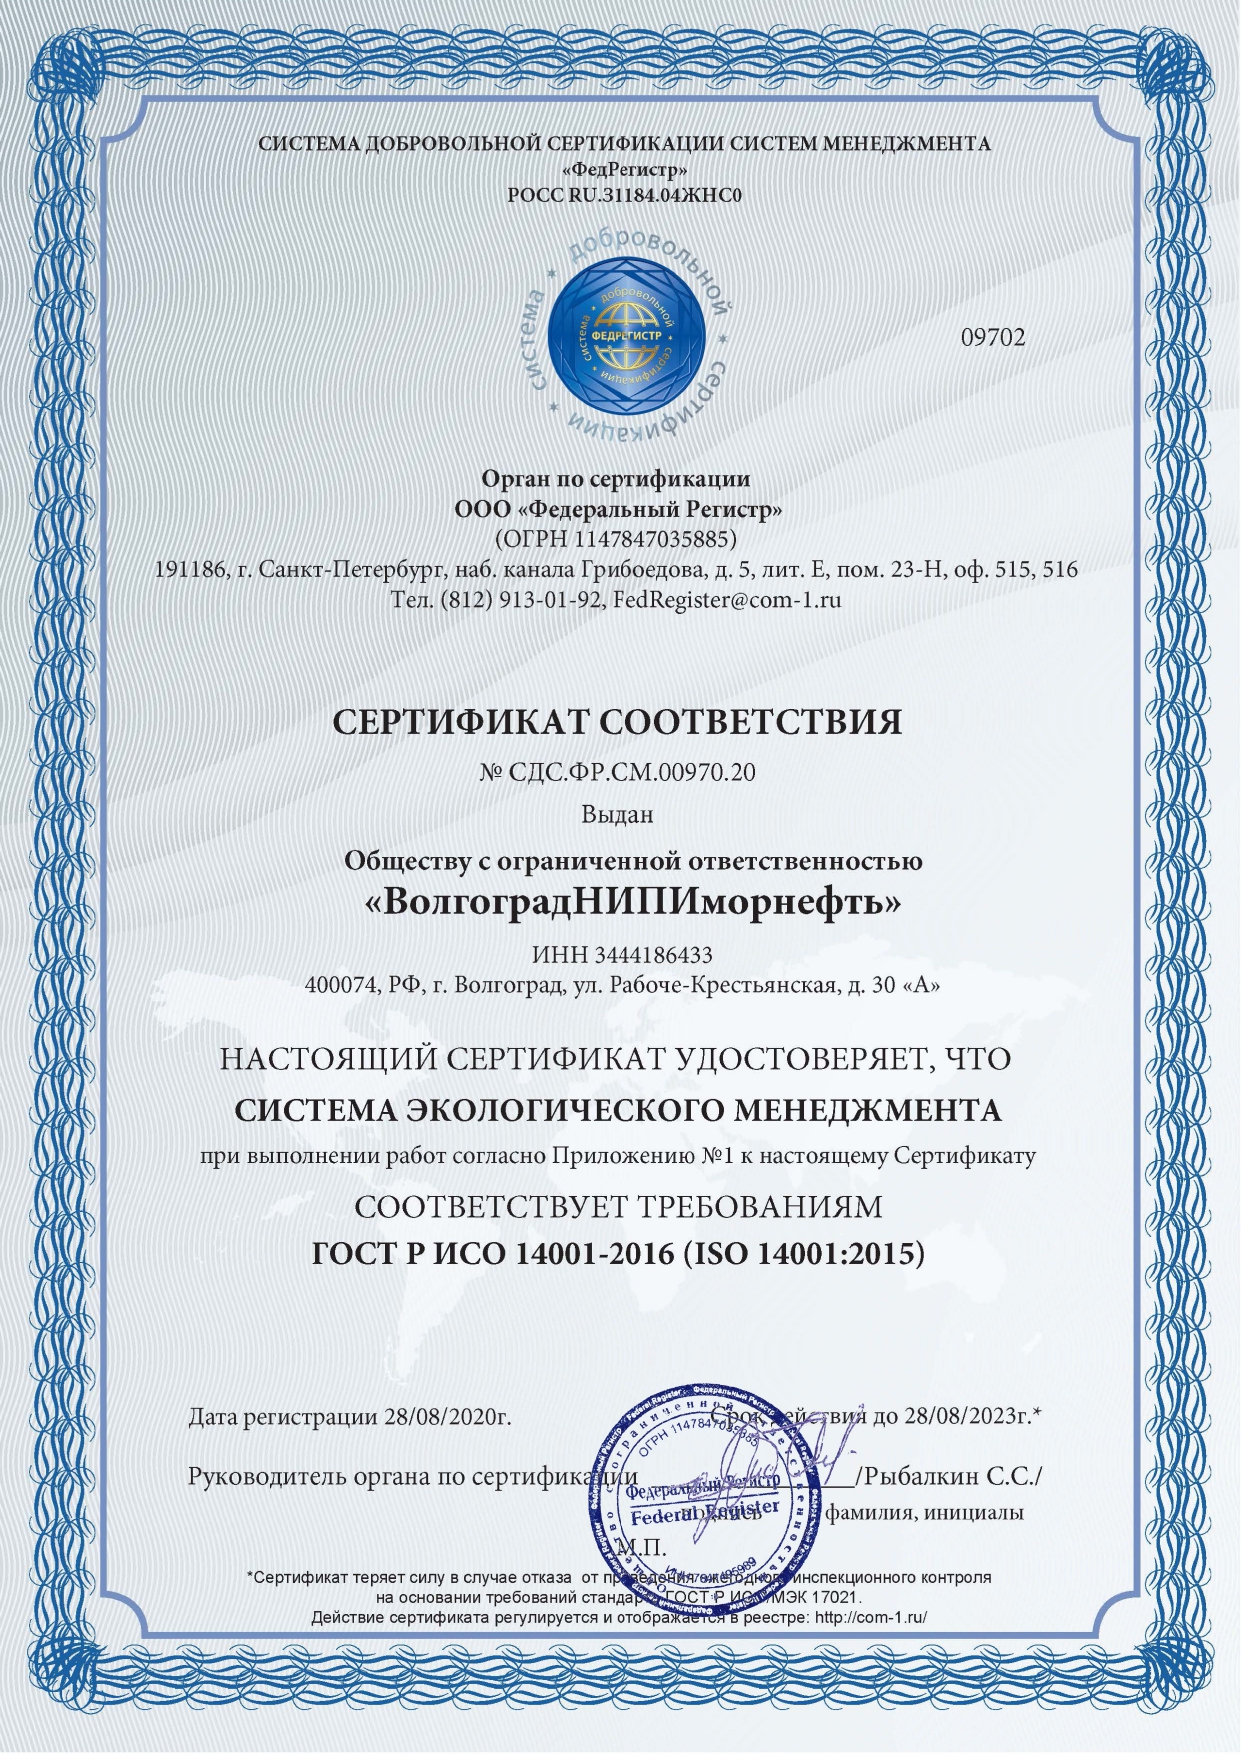 Сертификат соответствия системы экологического менеджмента требованиям ГОСТ Р ИСО 14001-2016